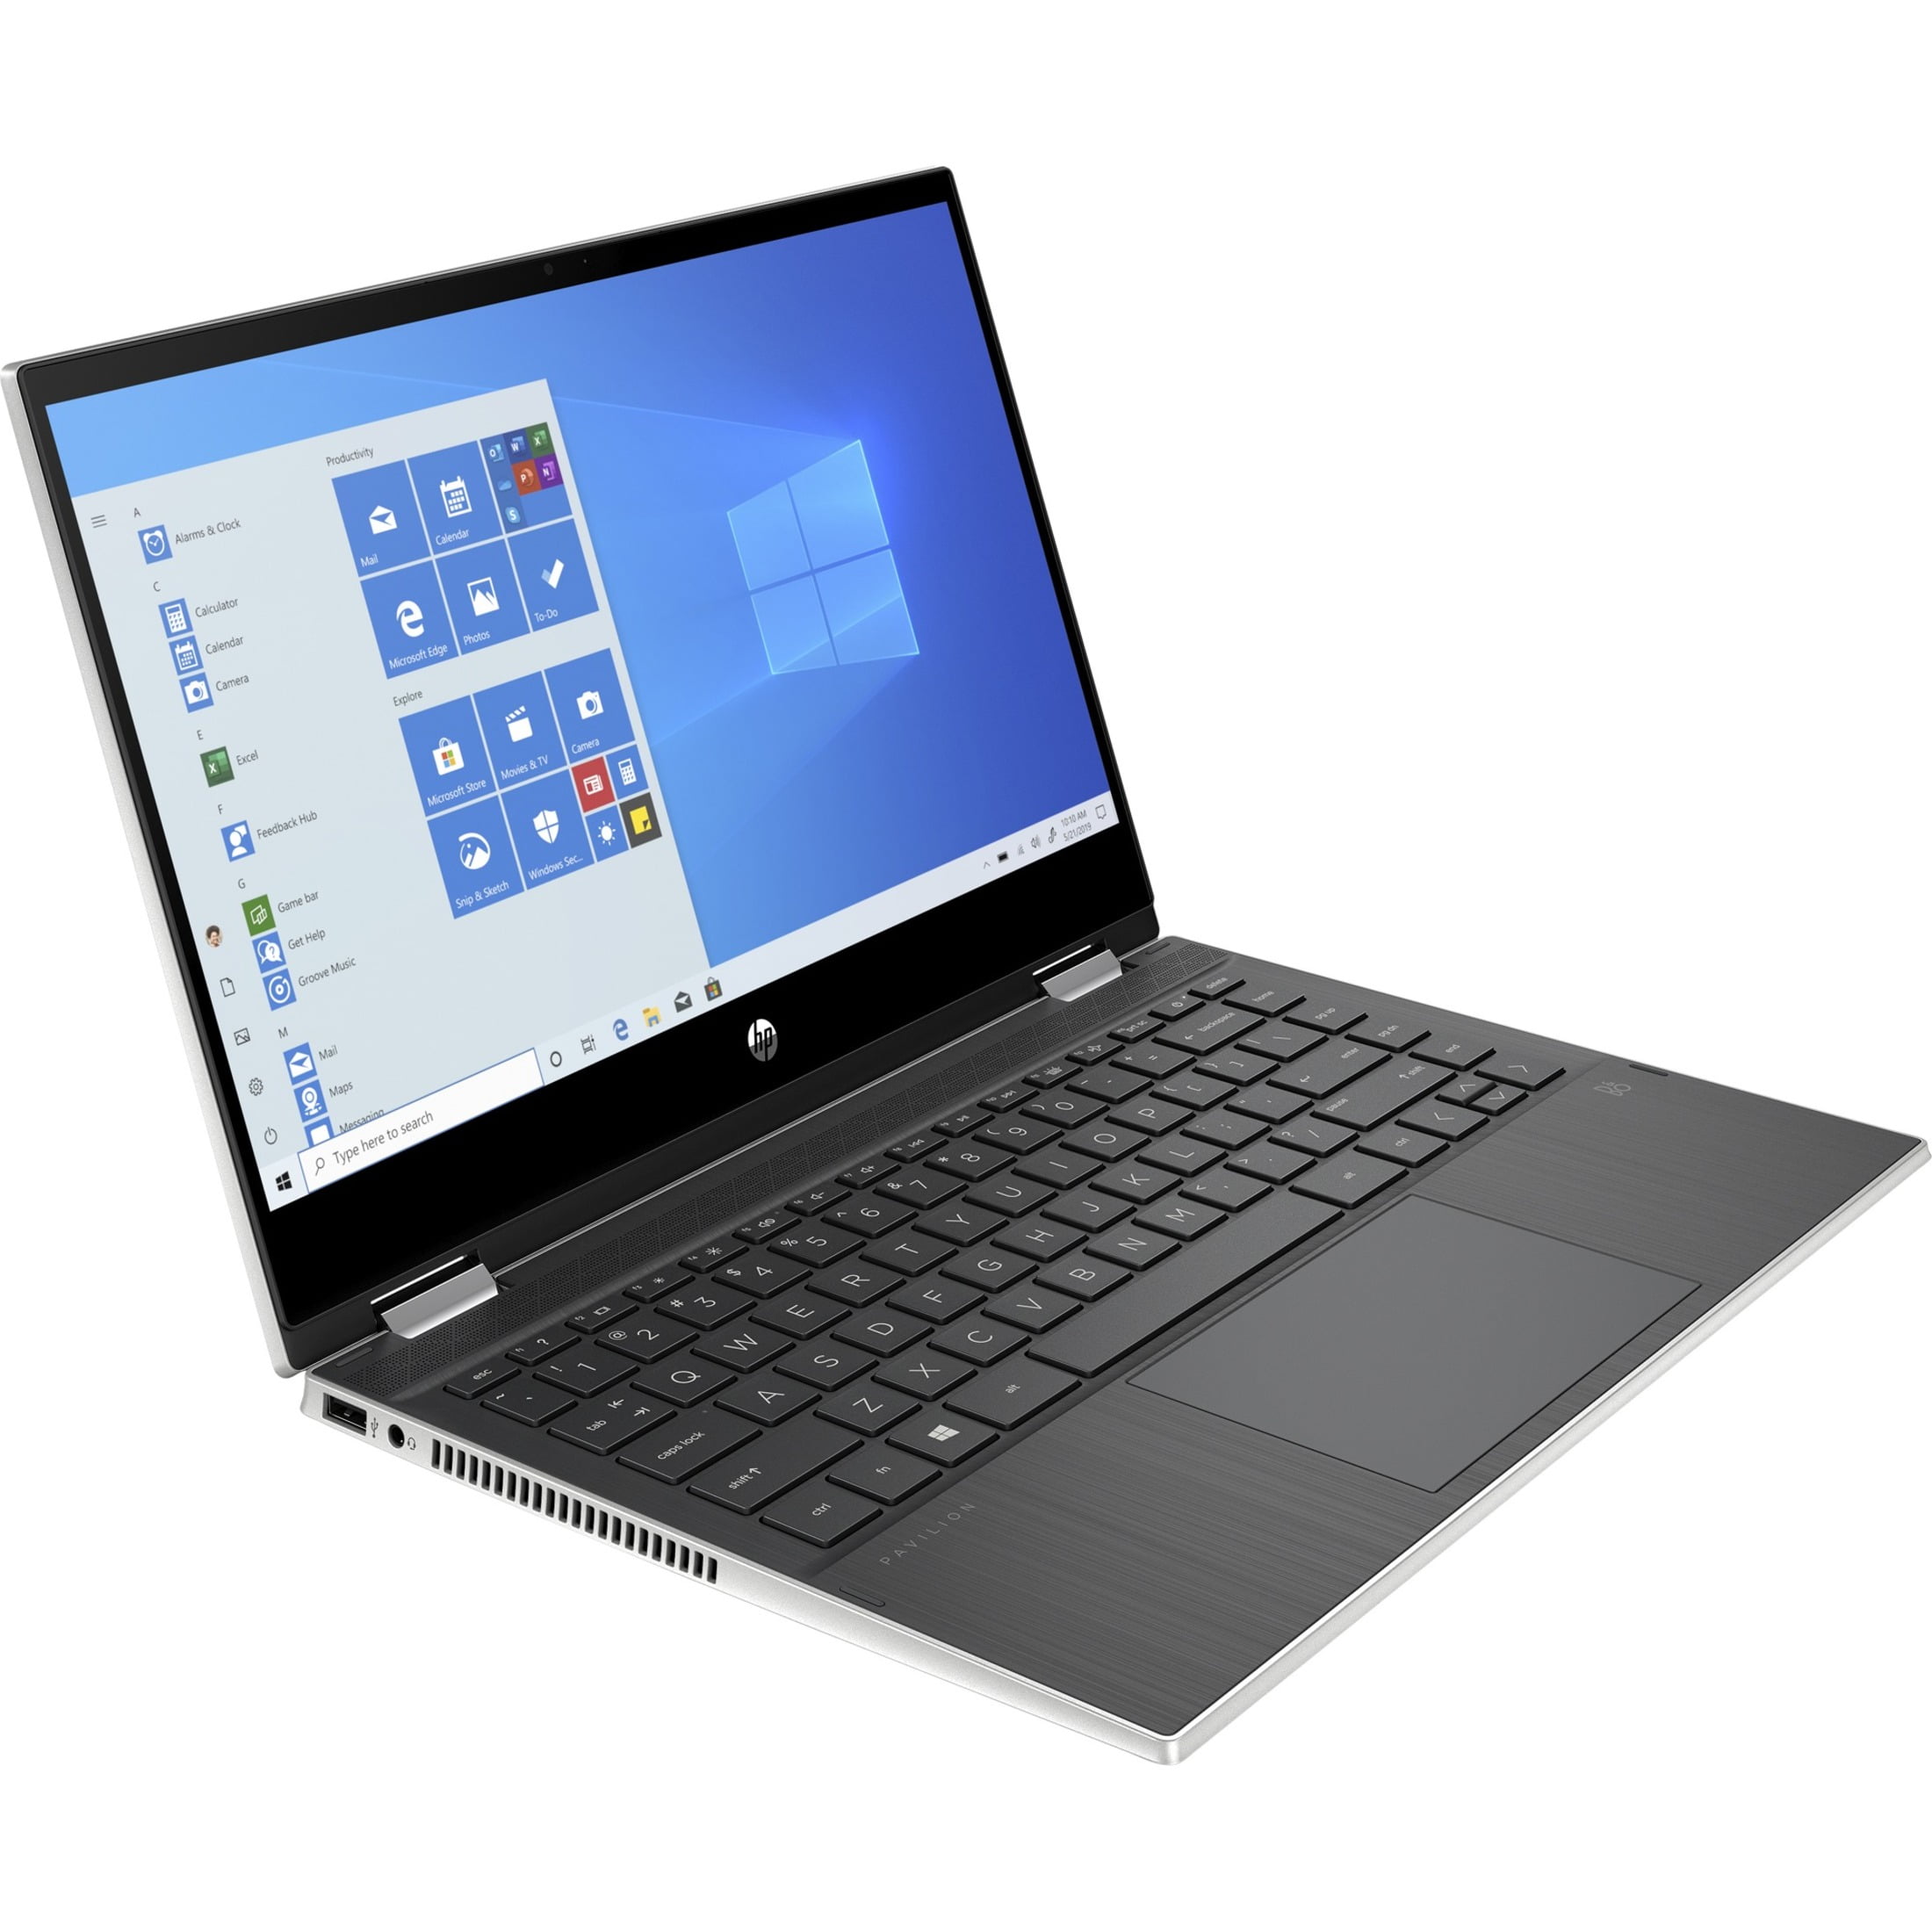 500GB SSHD Windows 7 Professional 64-Bit Loaded HP EliteBook 8440w 